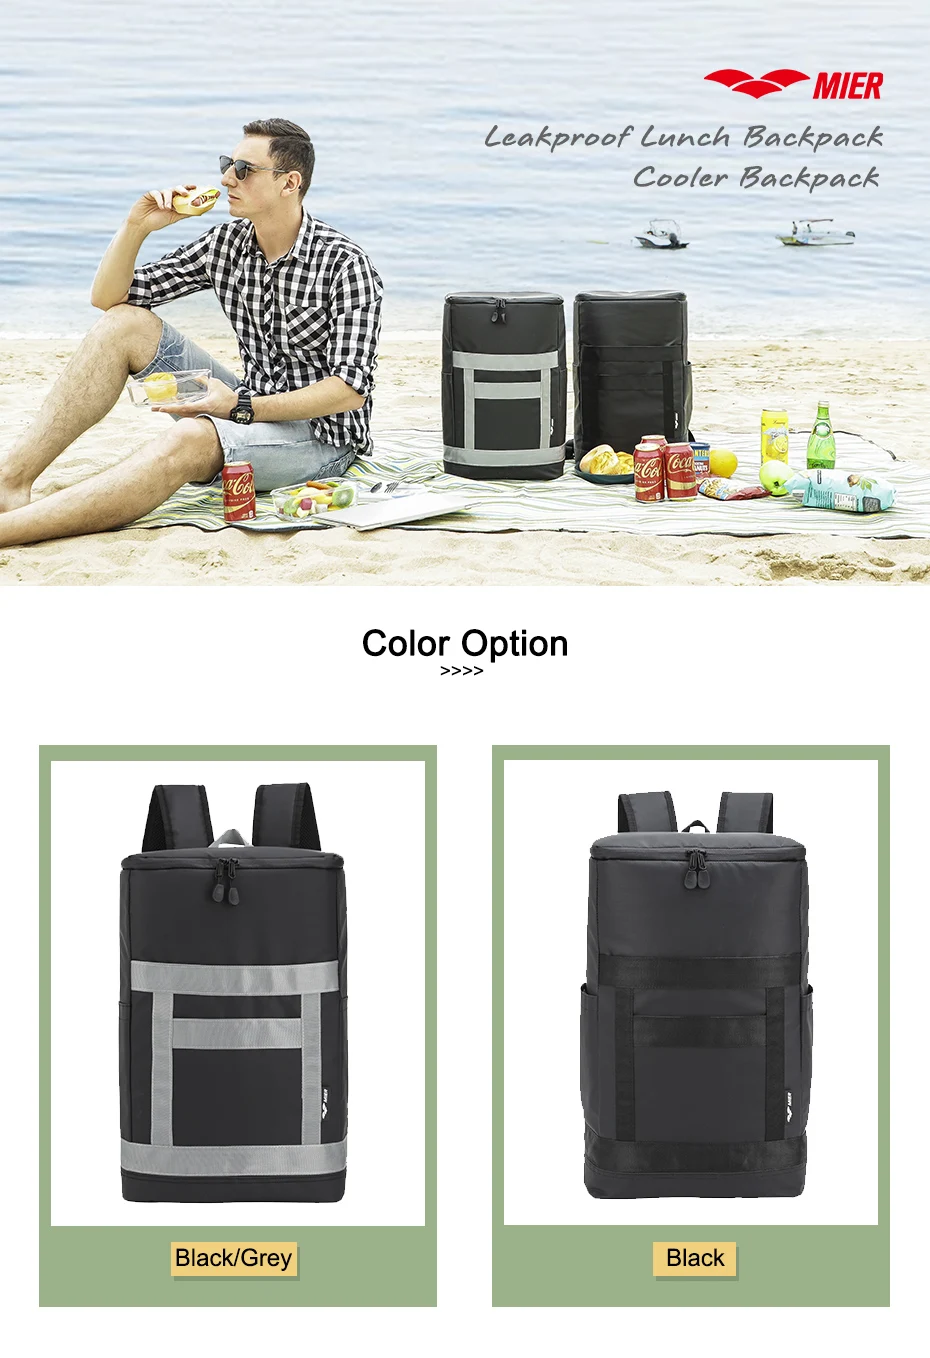 MIER герметичный Рюкзак-кулер для мужчин и женщин герметичный рюкзак для ланча, мягкая сумка-холодильник для работы, походов и т. д., 28 Can